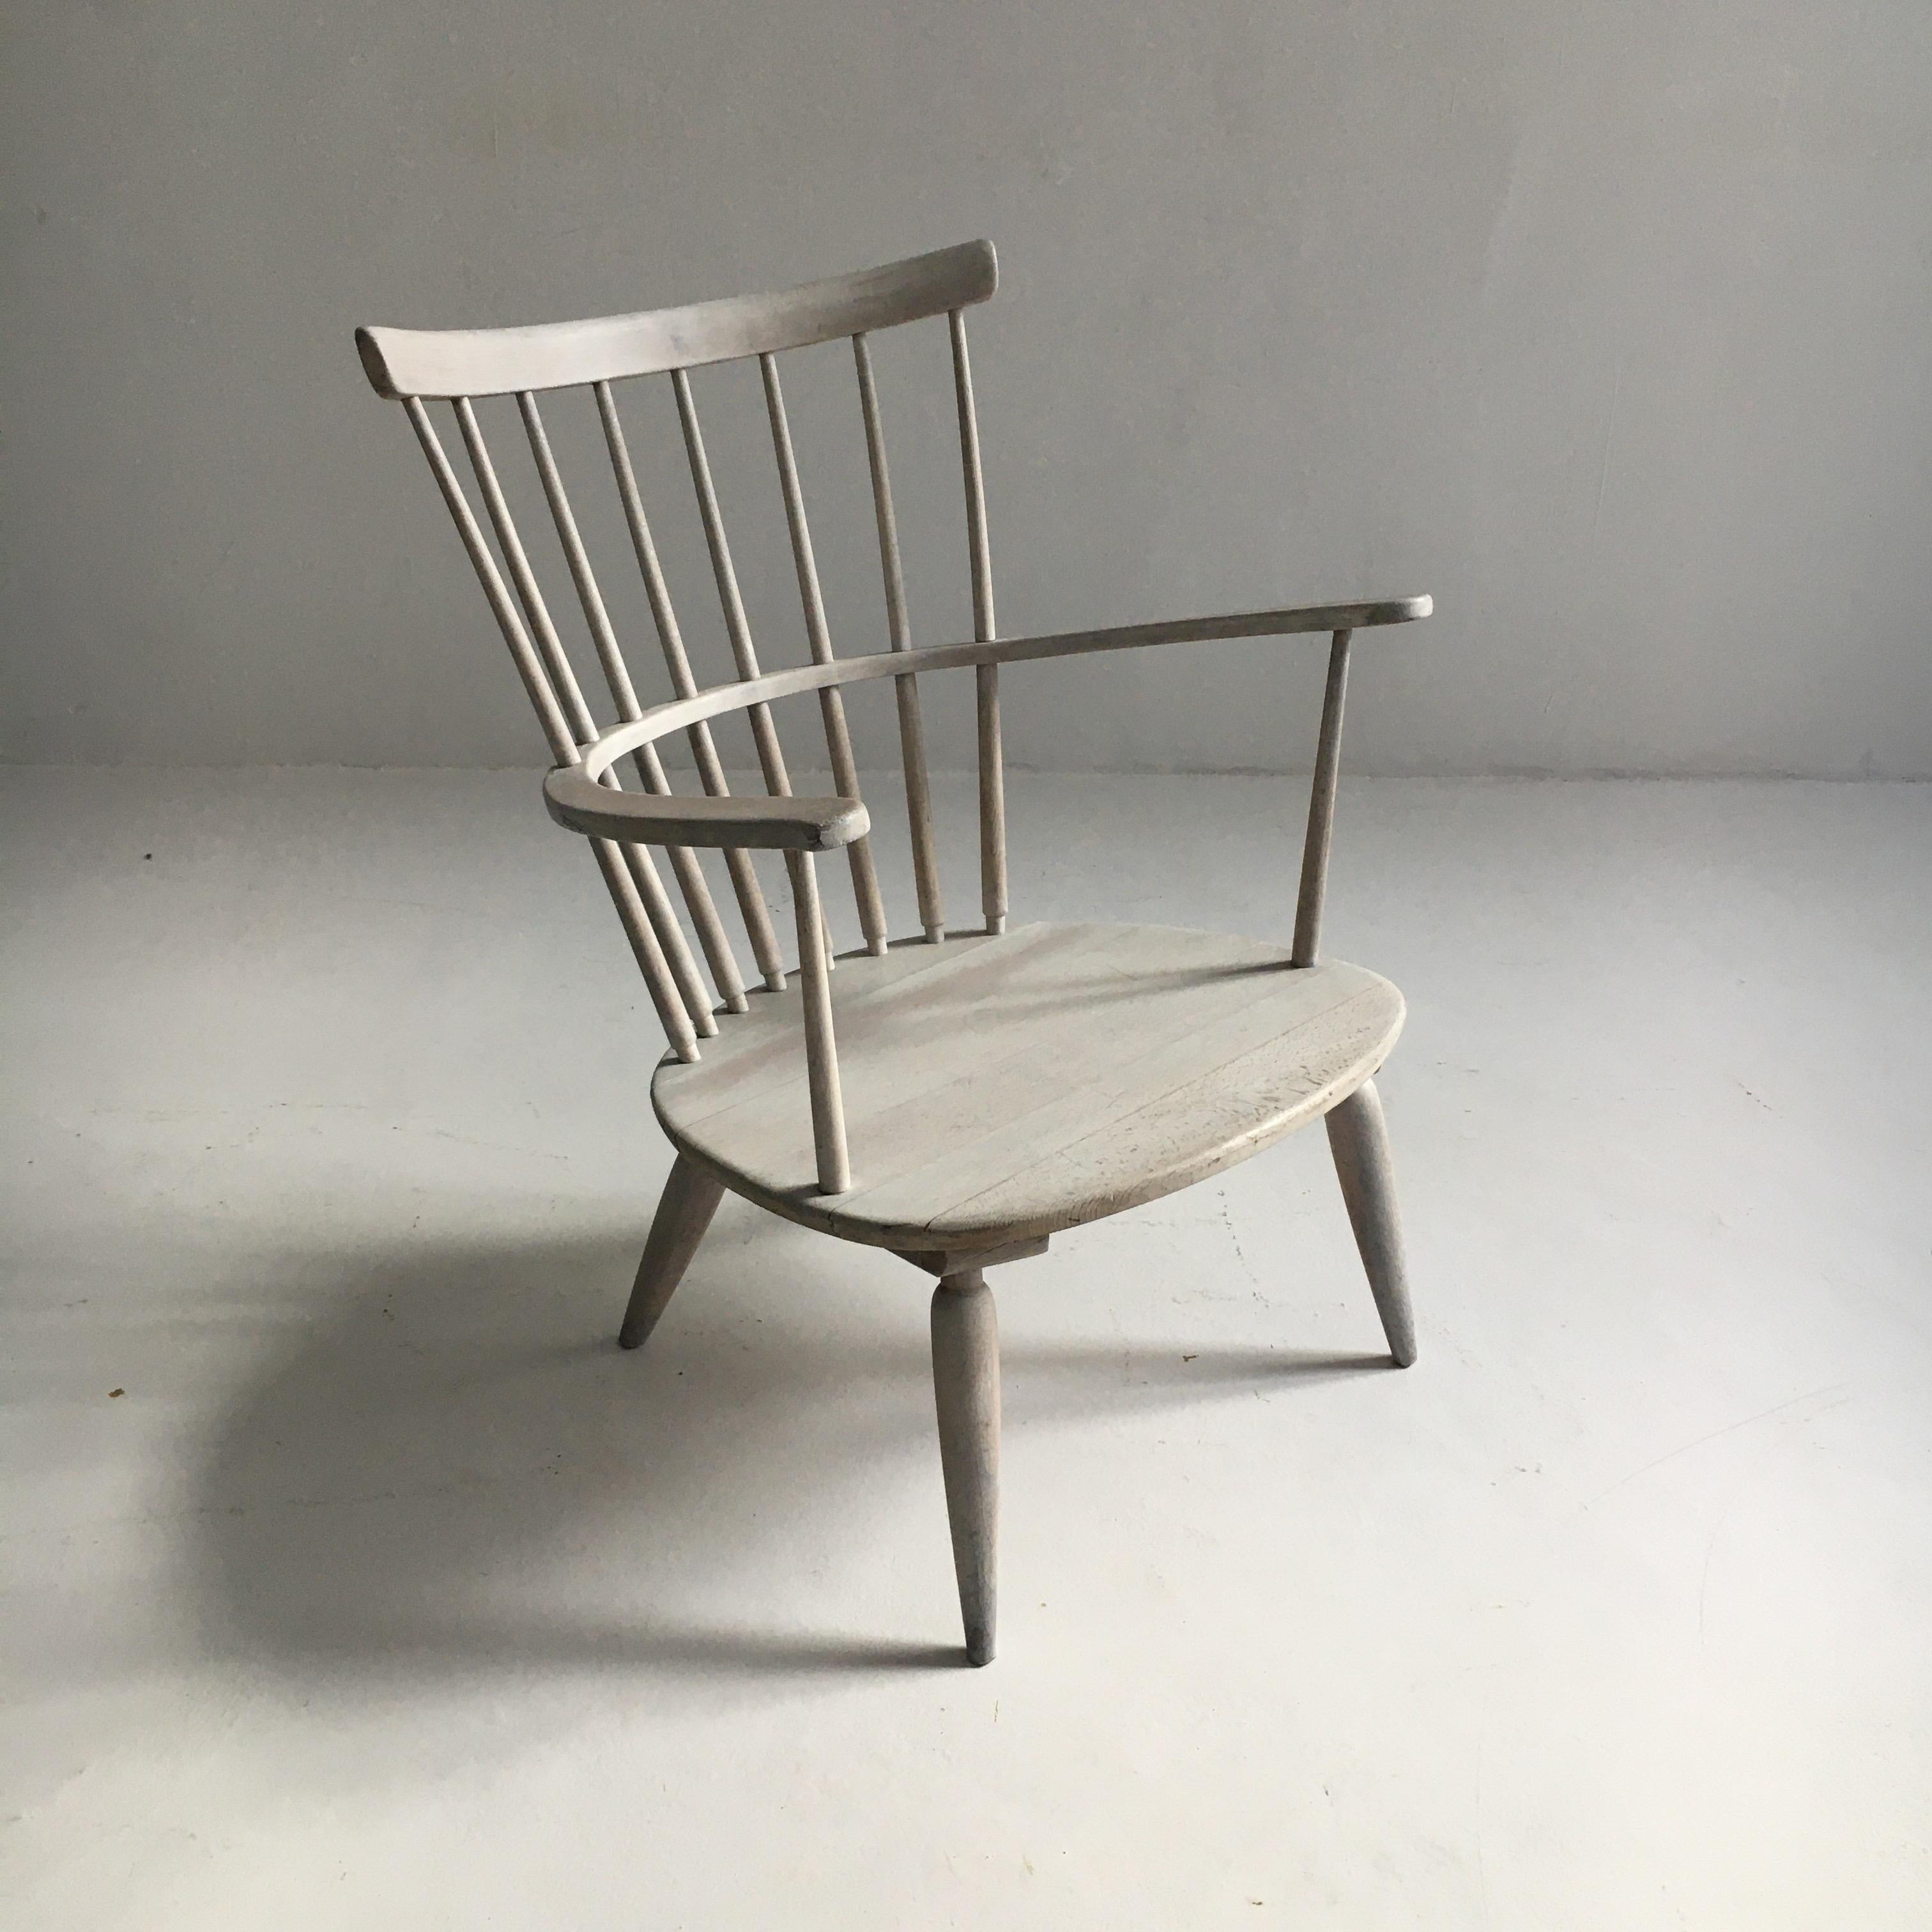 Franz Schuster Mid-Century Modern armchair, Austria, 1950s.